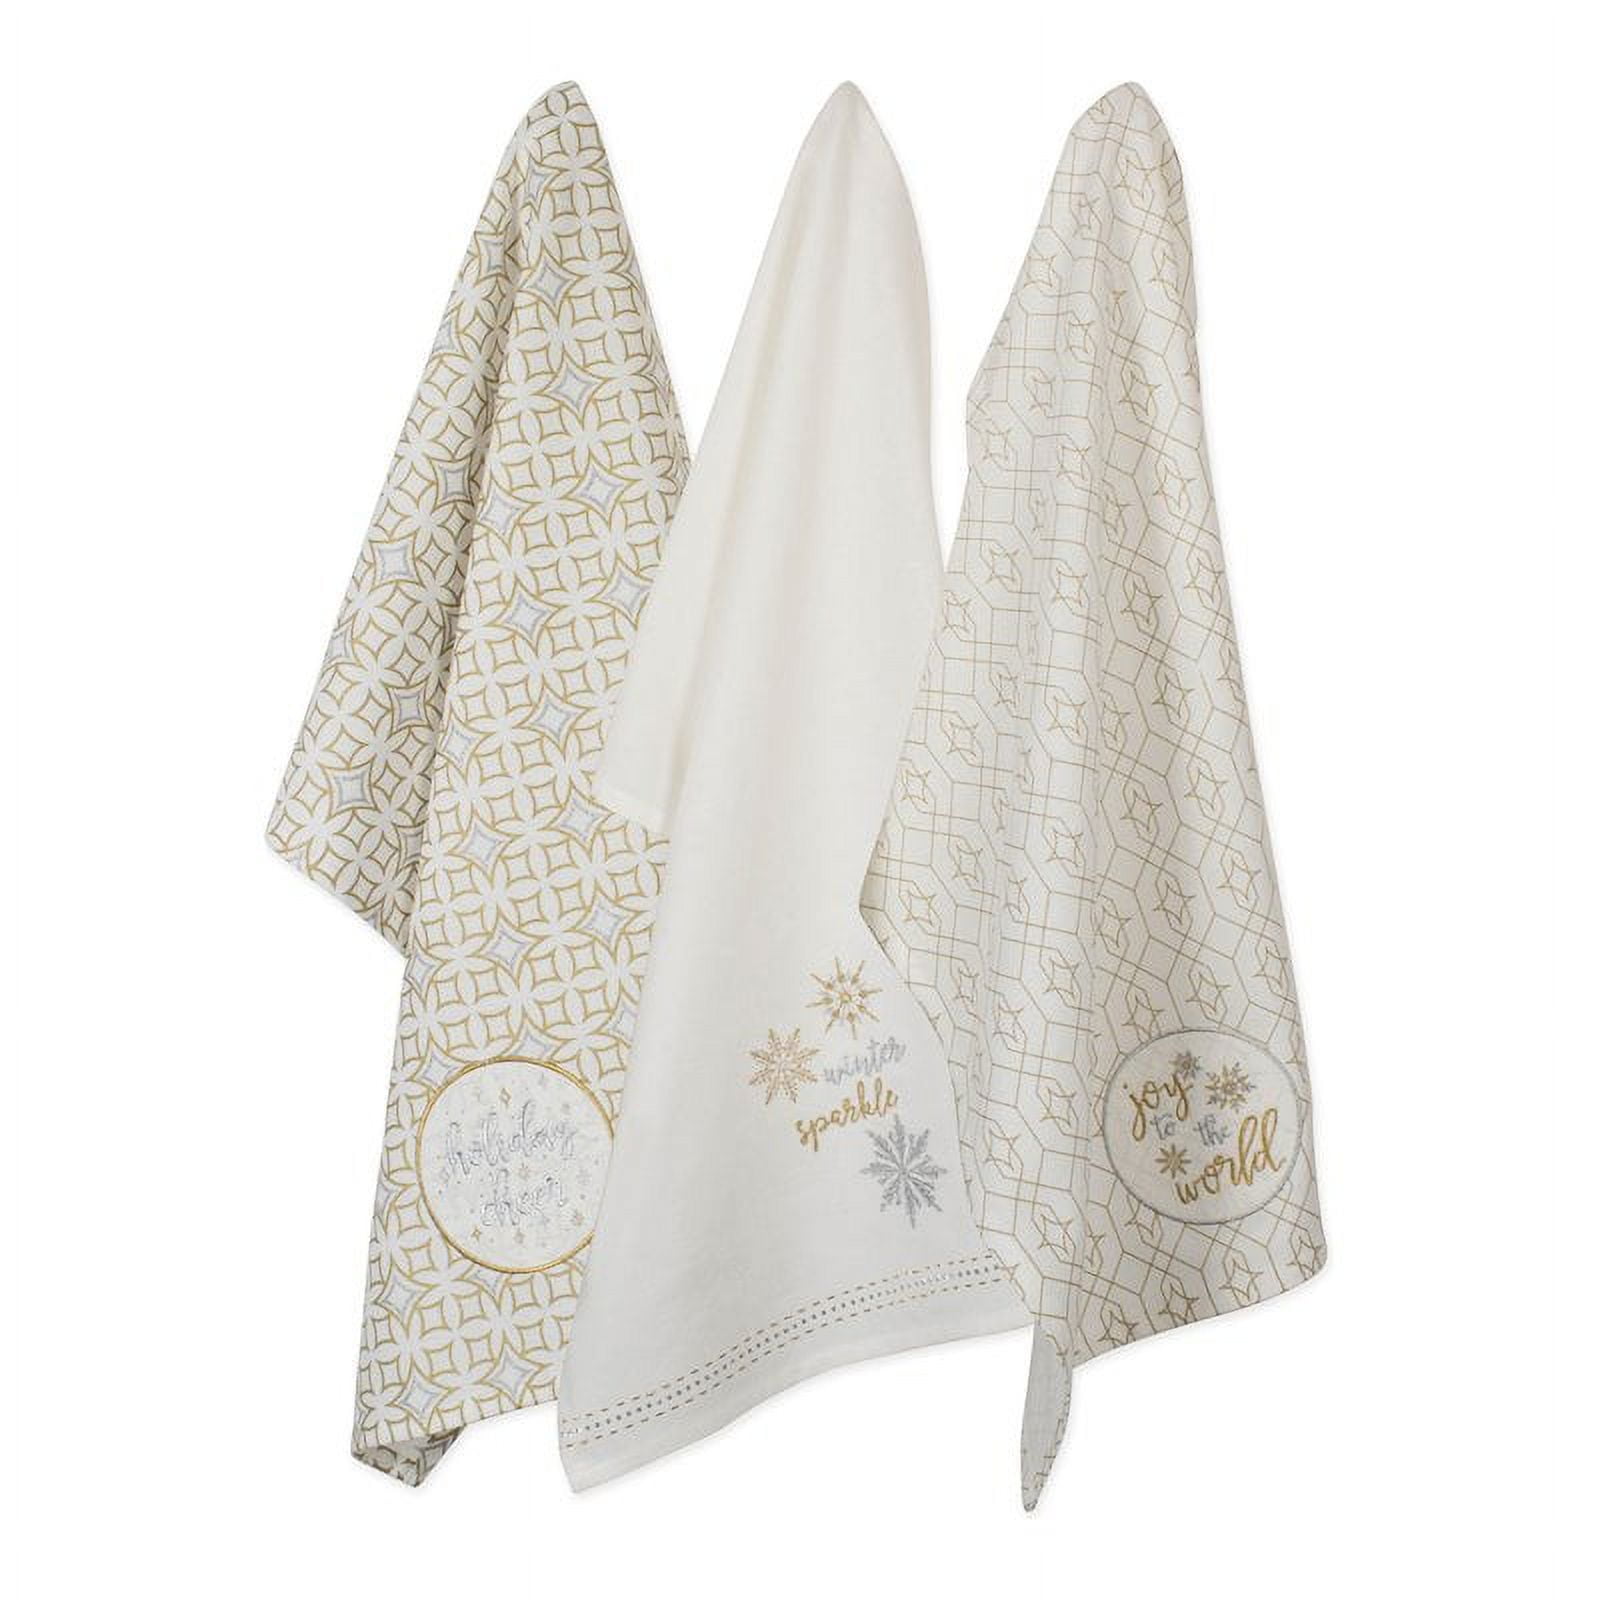 Design Imports Camz10710 Assorted Winter Sparkle Embellished Dish Towel Set - Set Of 3